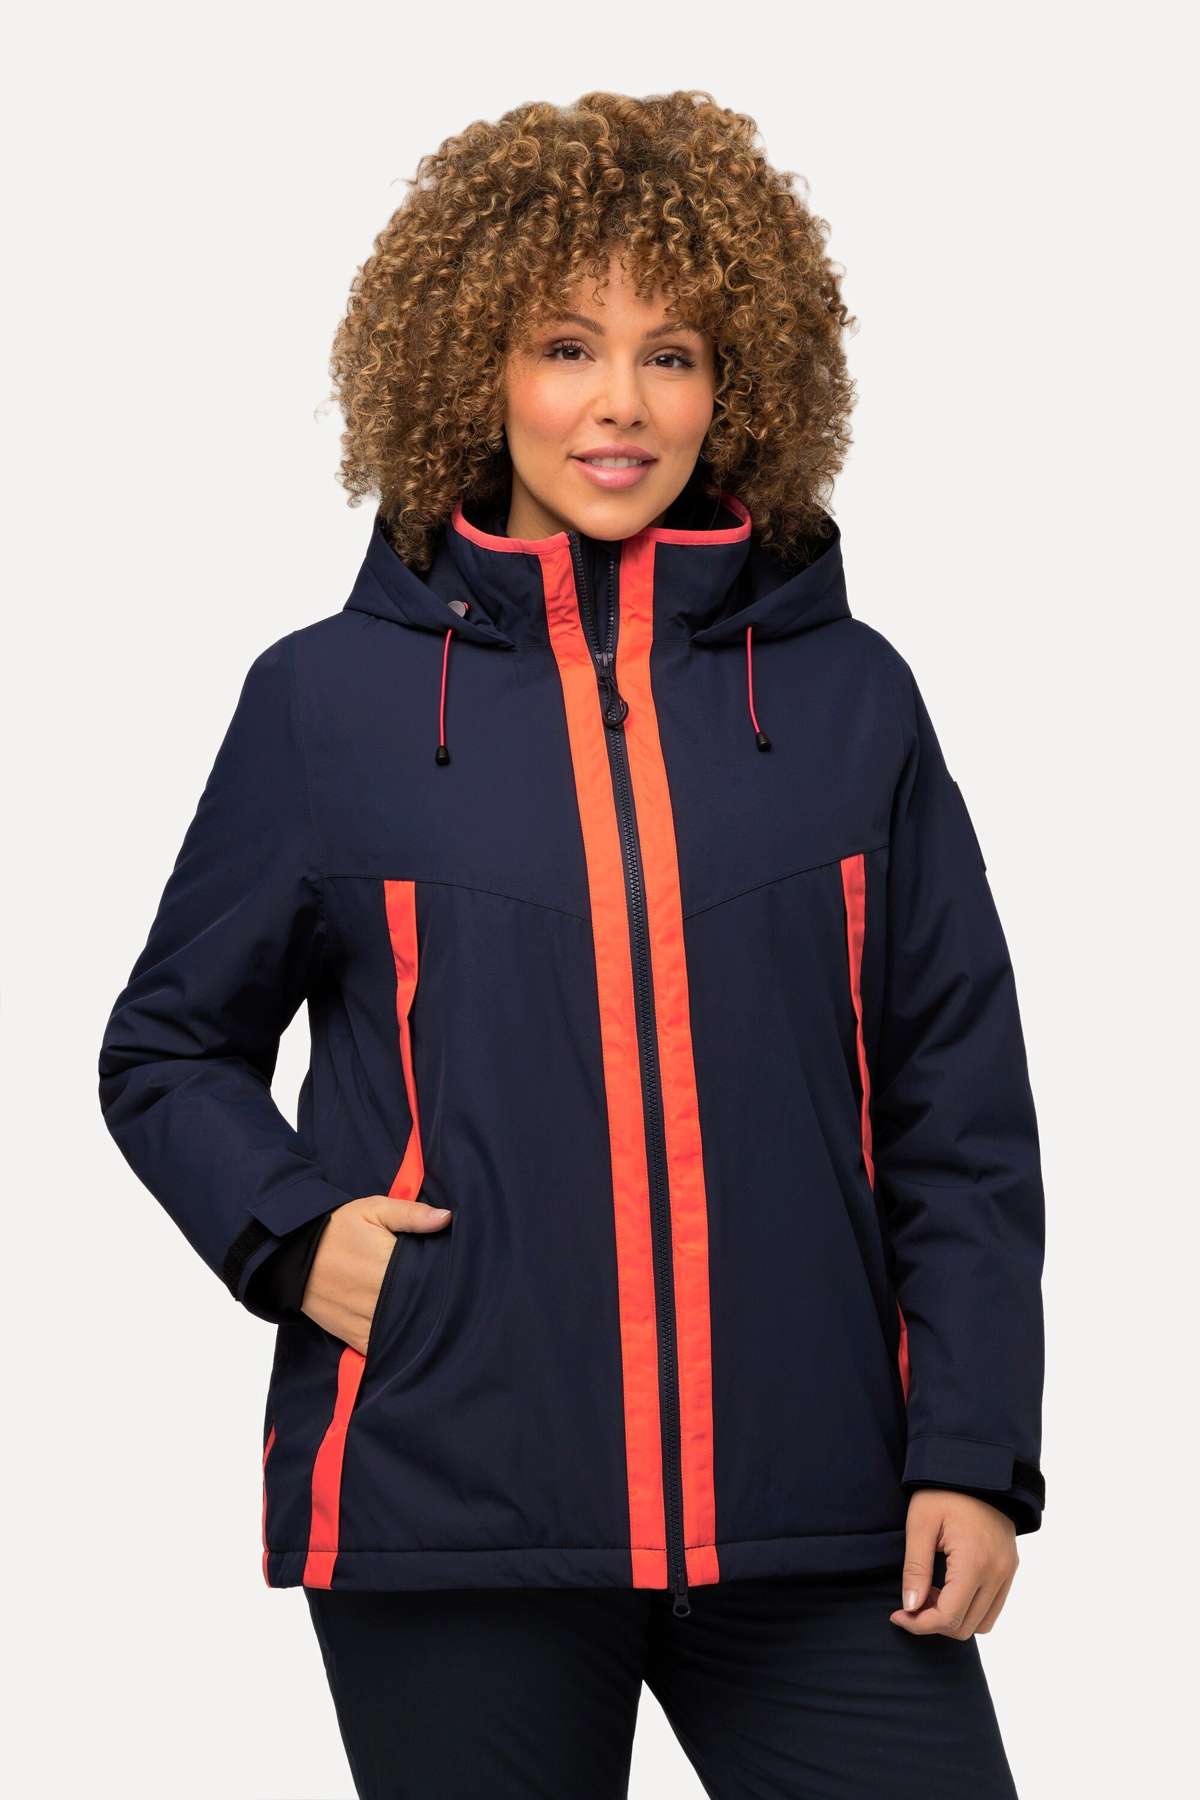 Функциональная куртка Функциональная куртка HYPRAR с водонепроницаемым отверстием для большого пальца